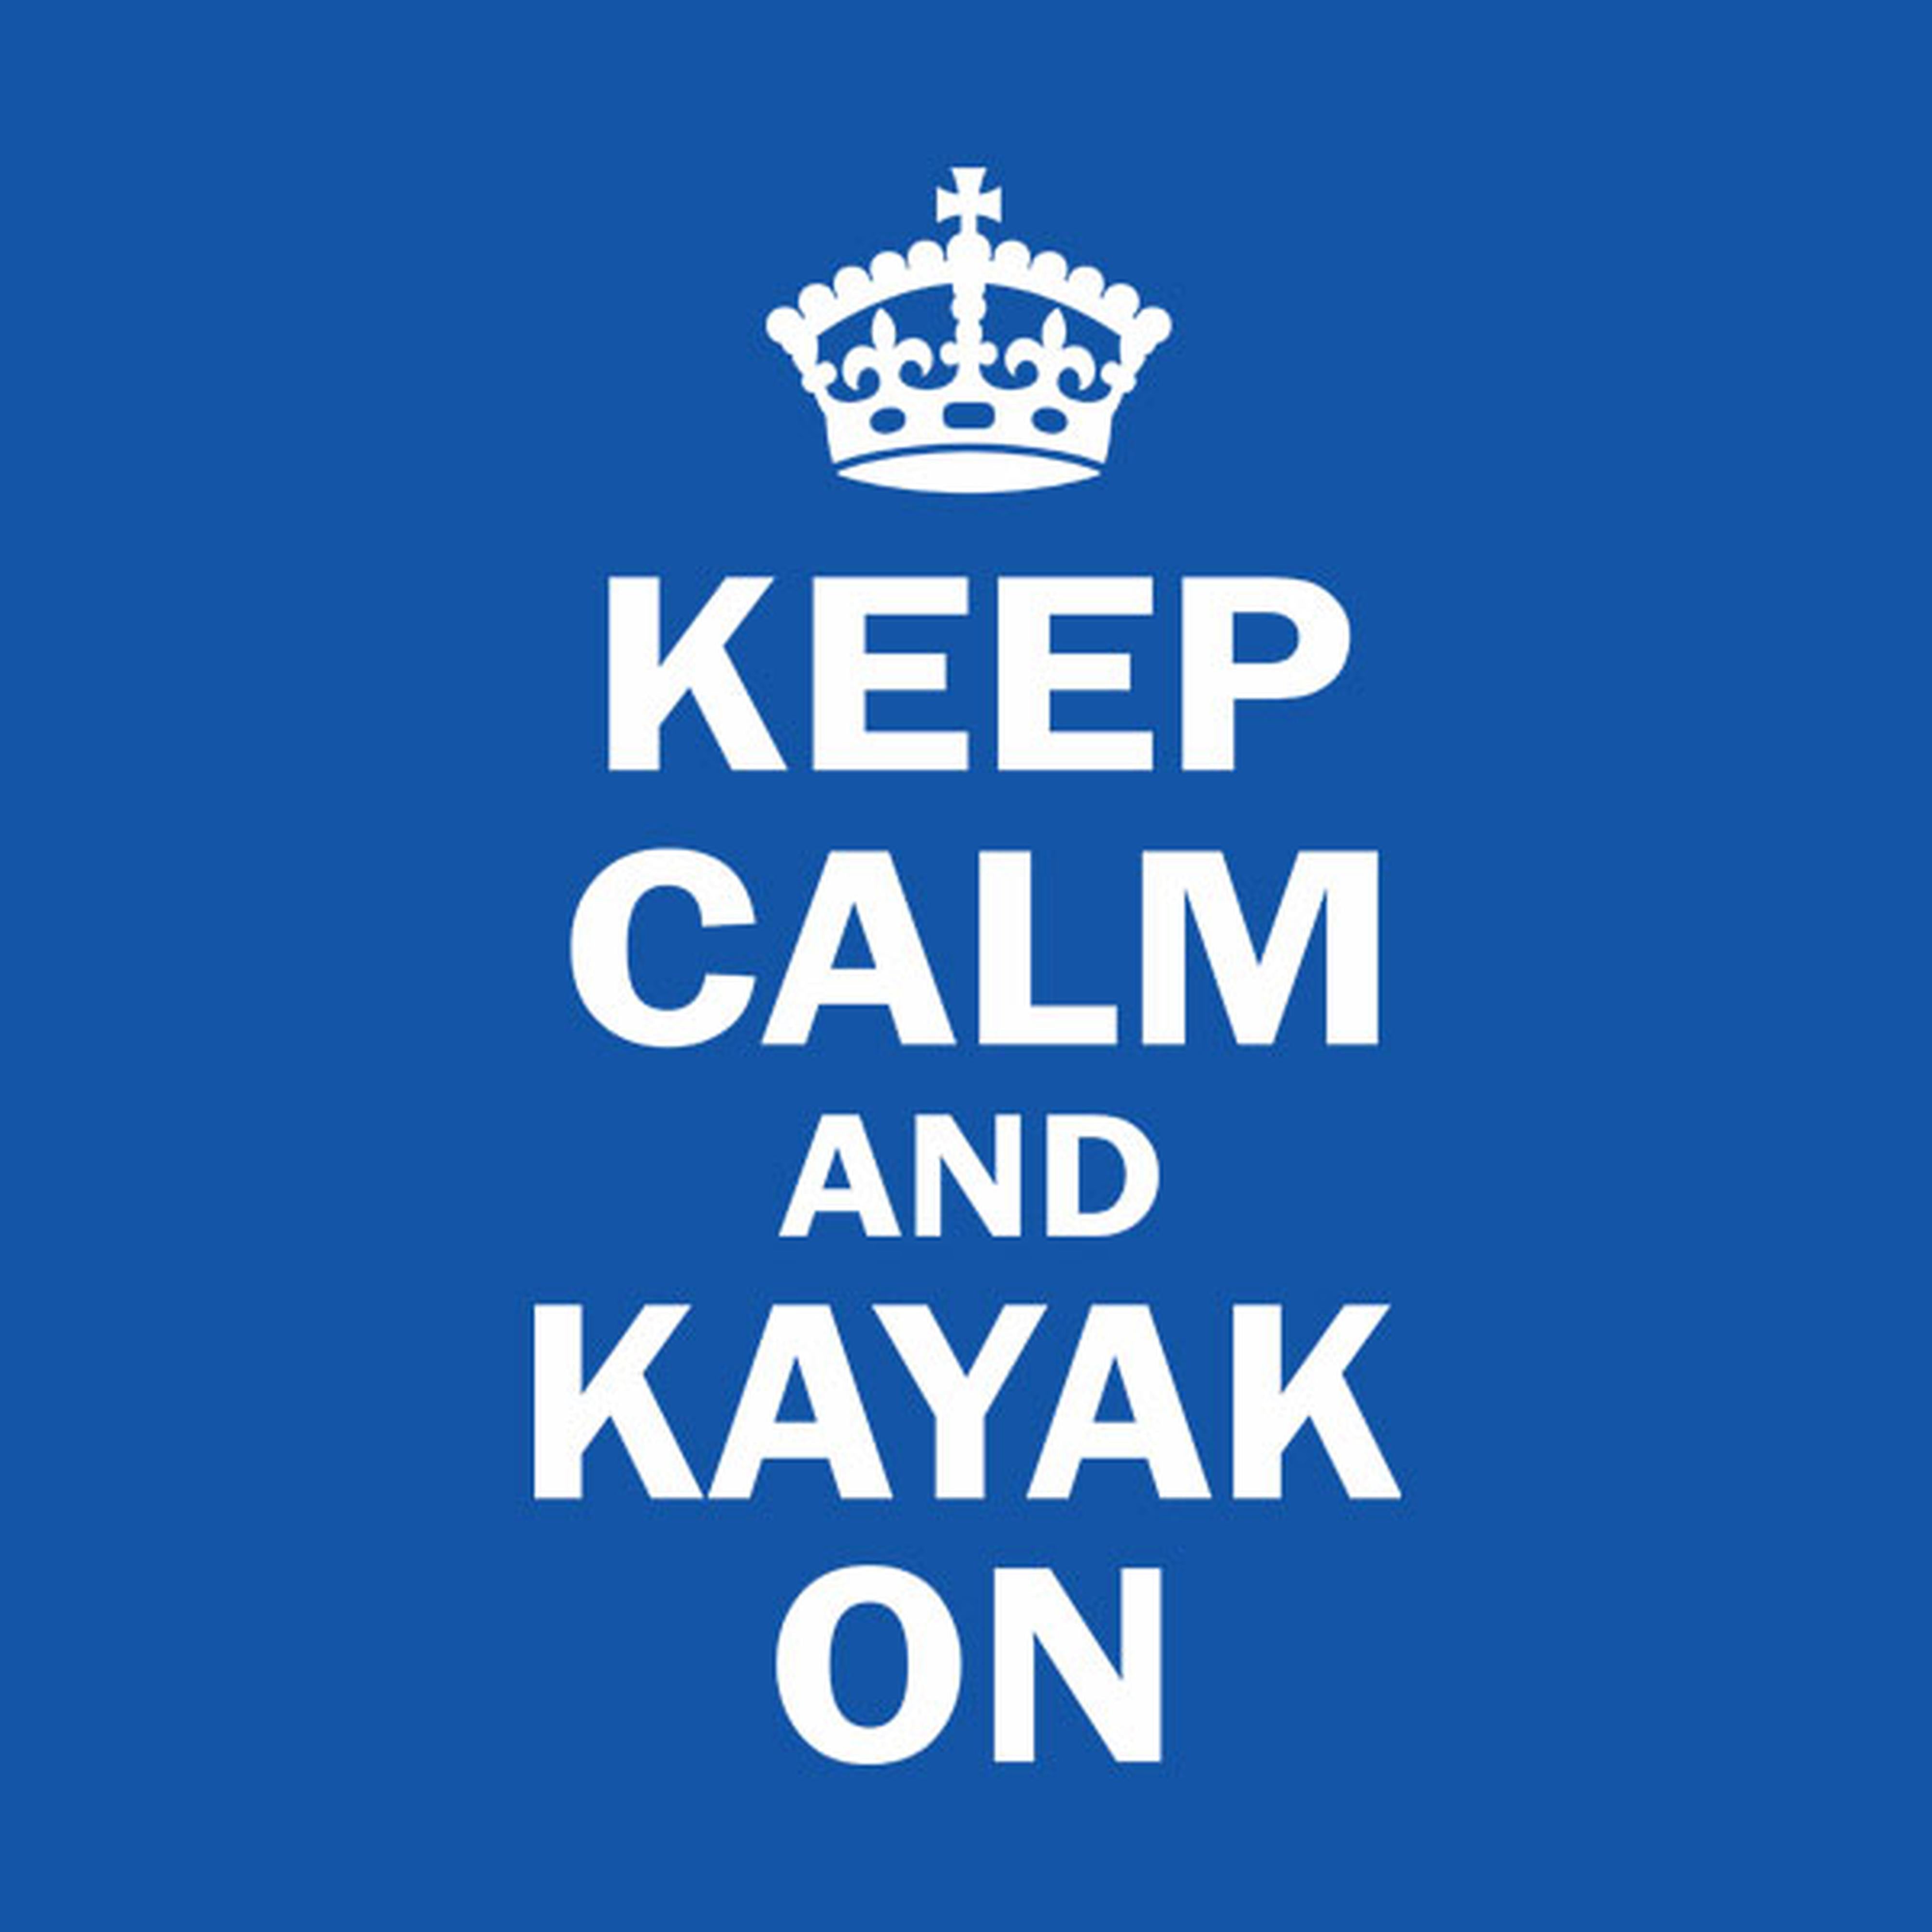 Keep calm and kayak on - T-shirt